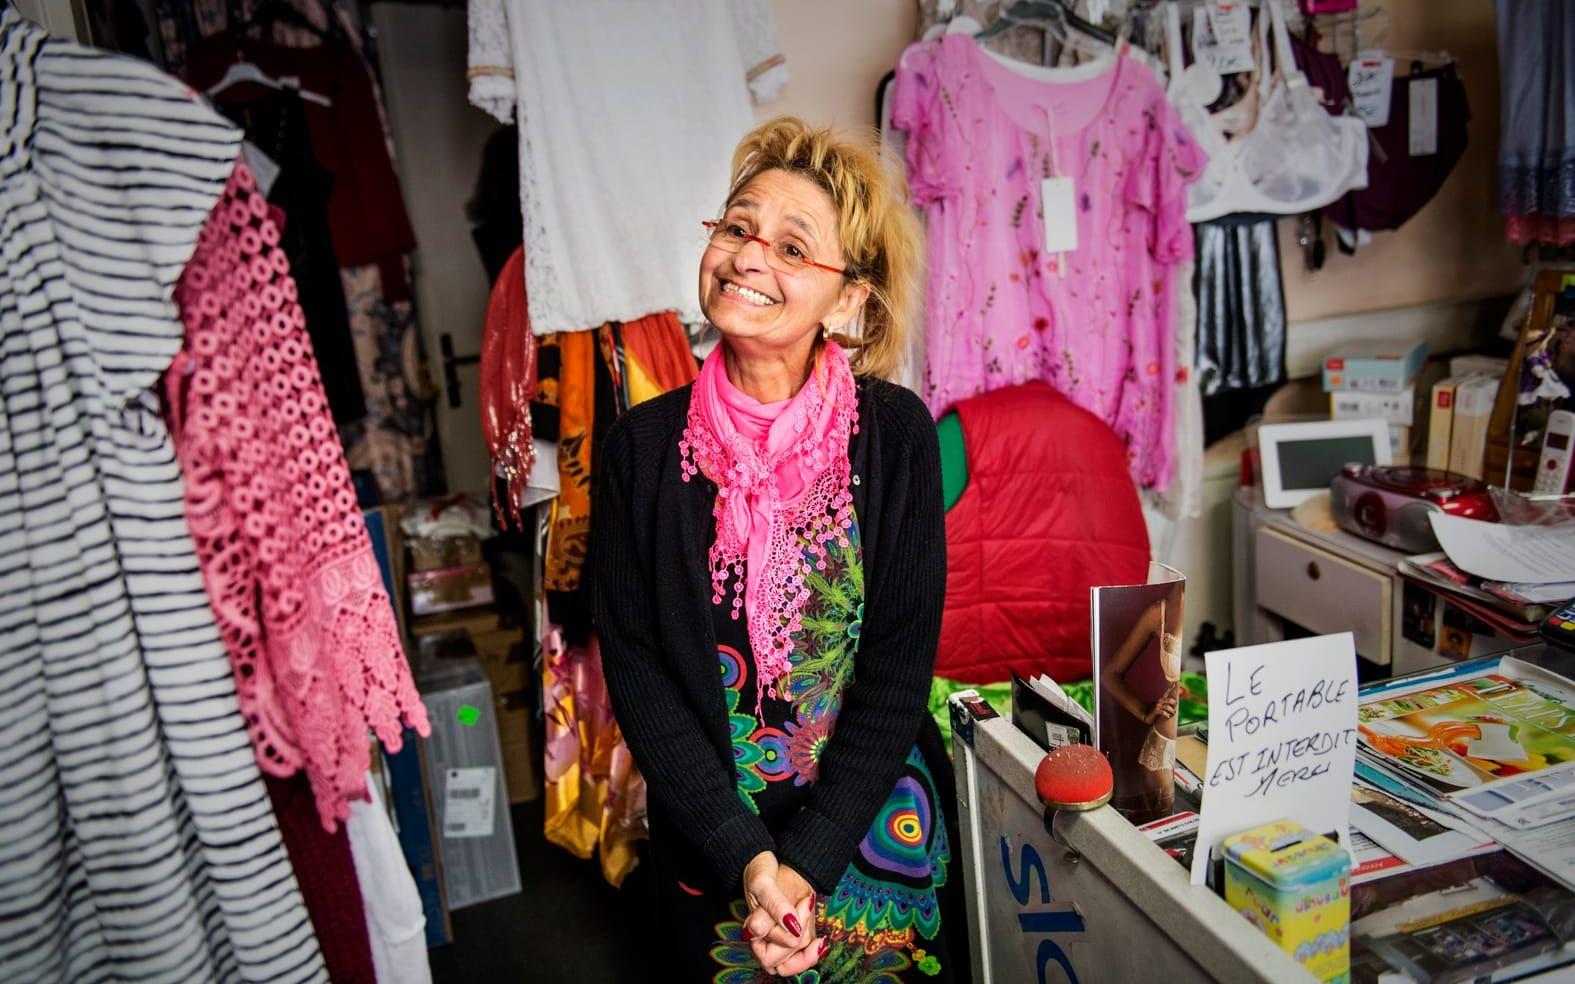 Invid kassan har butiksägaren Malika Martin satt upp en skylt om mobilförbud. "Folk kommer in och säger inte ens hej", säger hon. FOTO: Stefan Berg